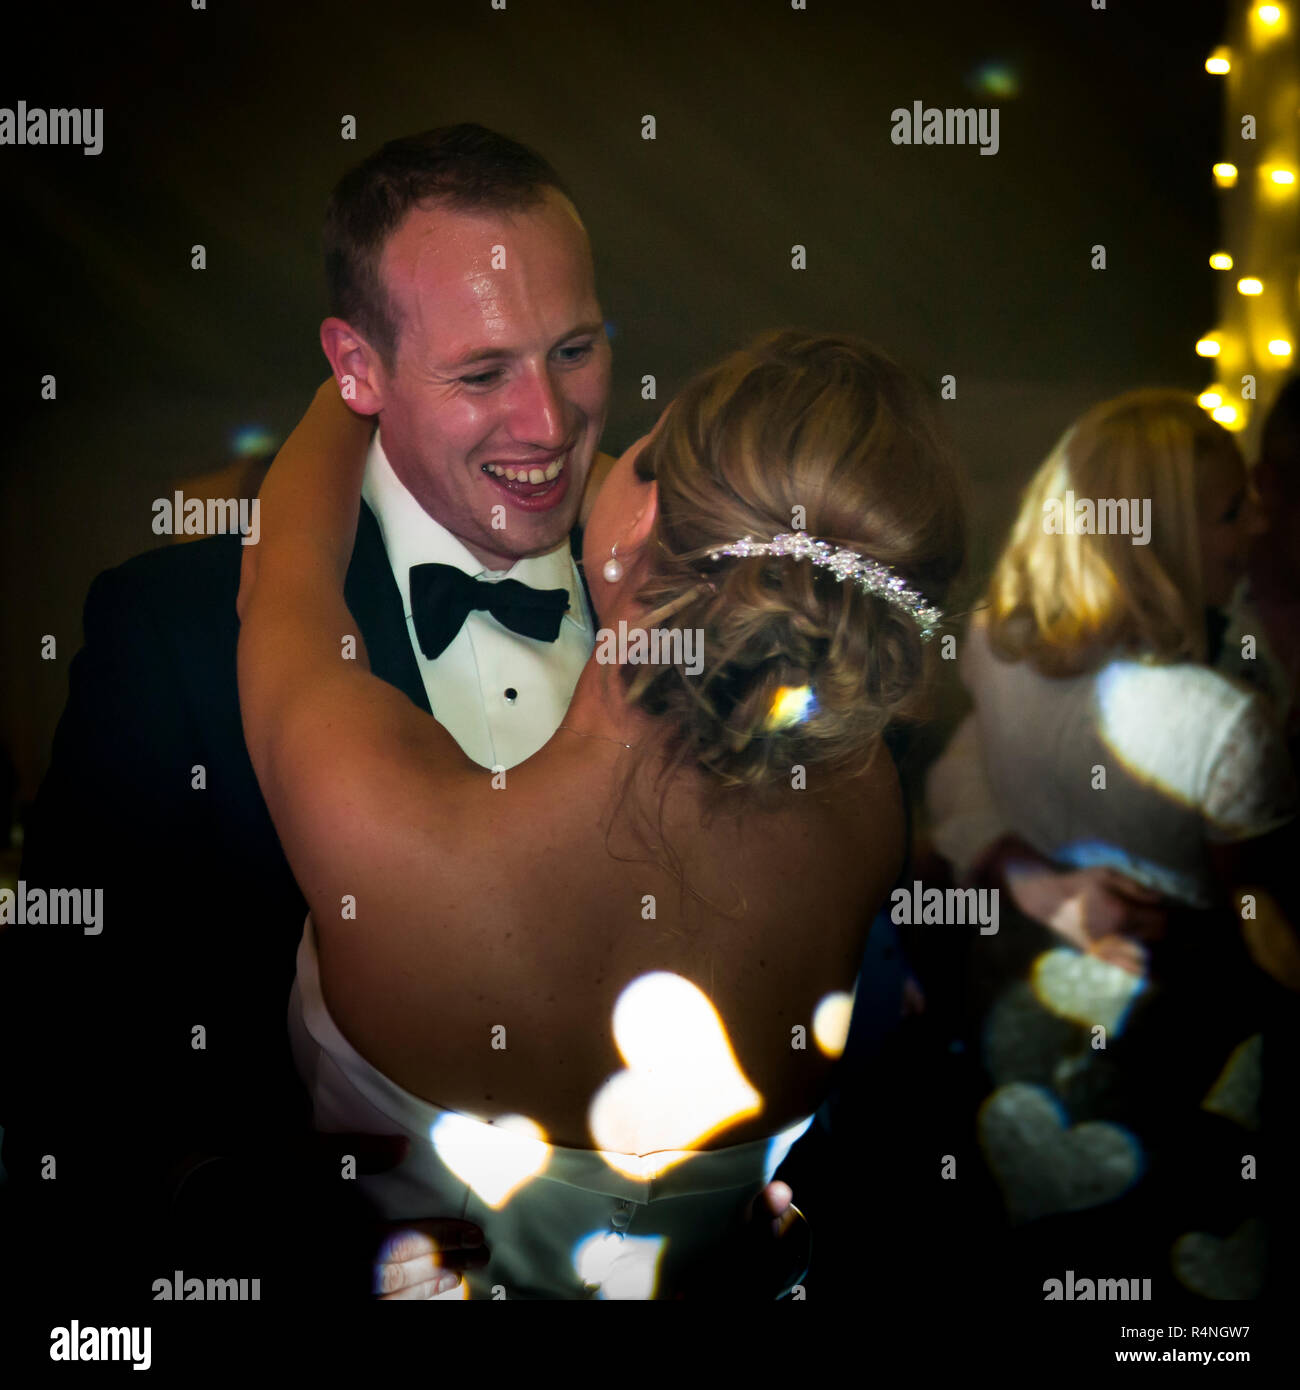 Sposa e sposo sulla pista da ballo con proiezione di cuori sulla schiena della sposa Foto Stock